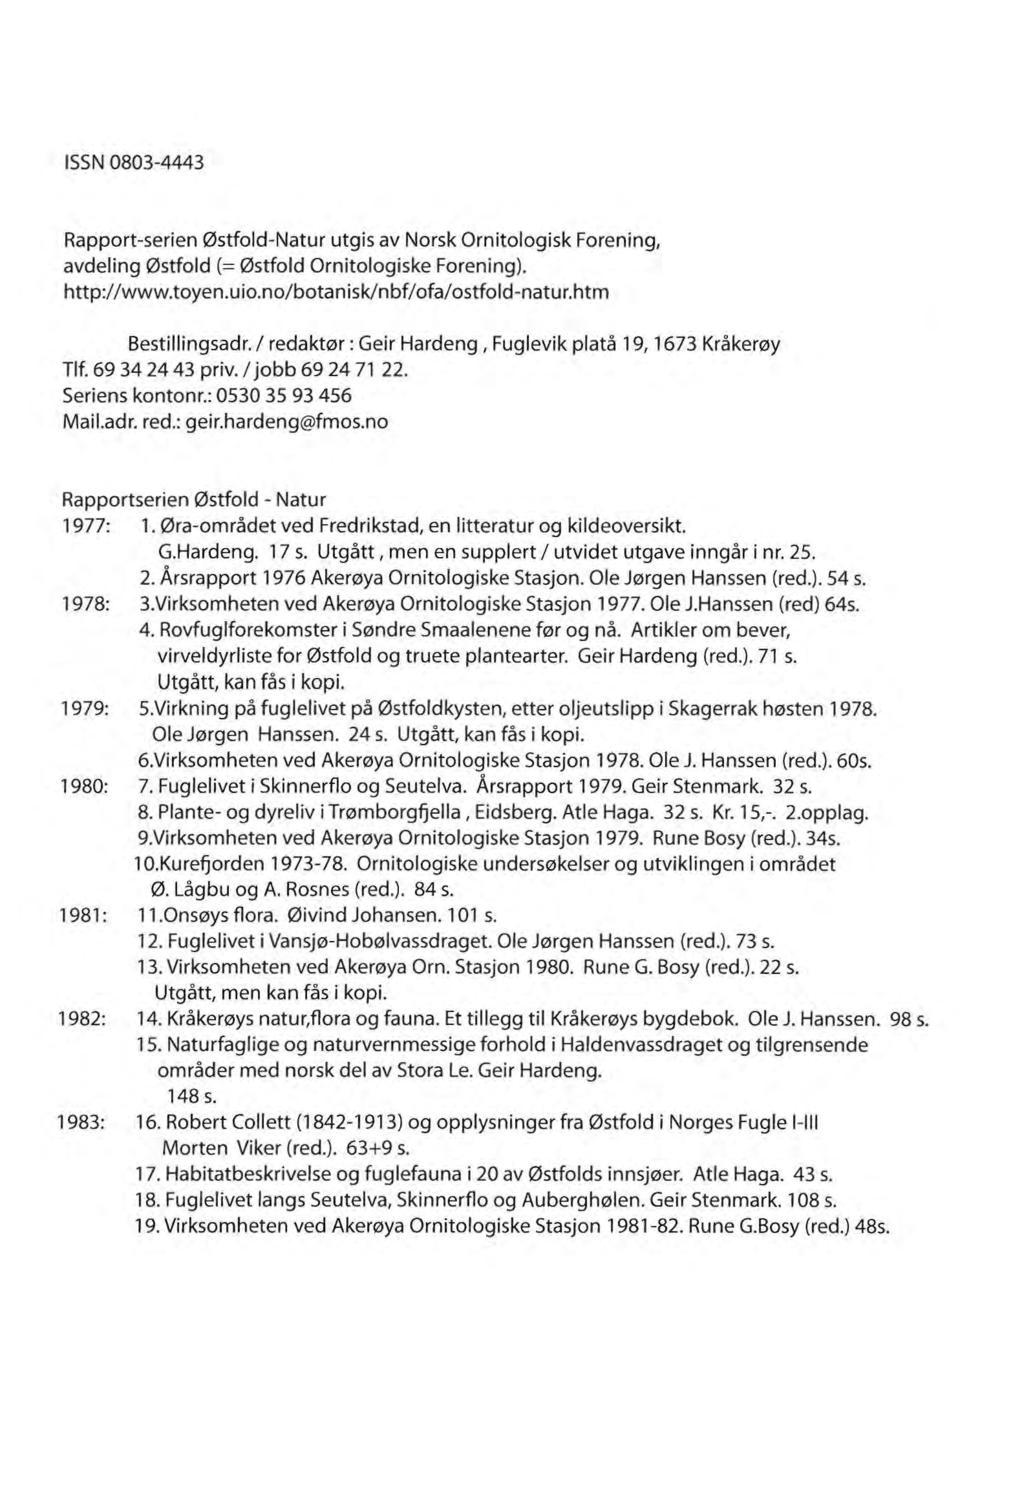 ISSN 0803-4443 Rapport-serien 0stfold-Natur utgis av Norsk Ornitologisk Forening1 avdeling 0stfold (= 0stfold Ornitologiske Forening). http:llwww.toyen.uio.nolbotanisklnbflofalostfold-natur.